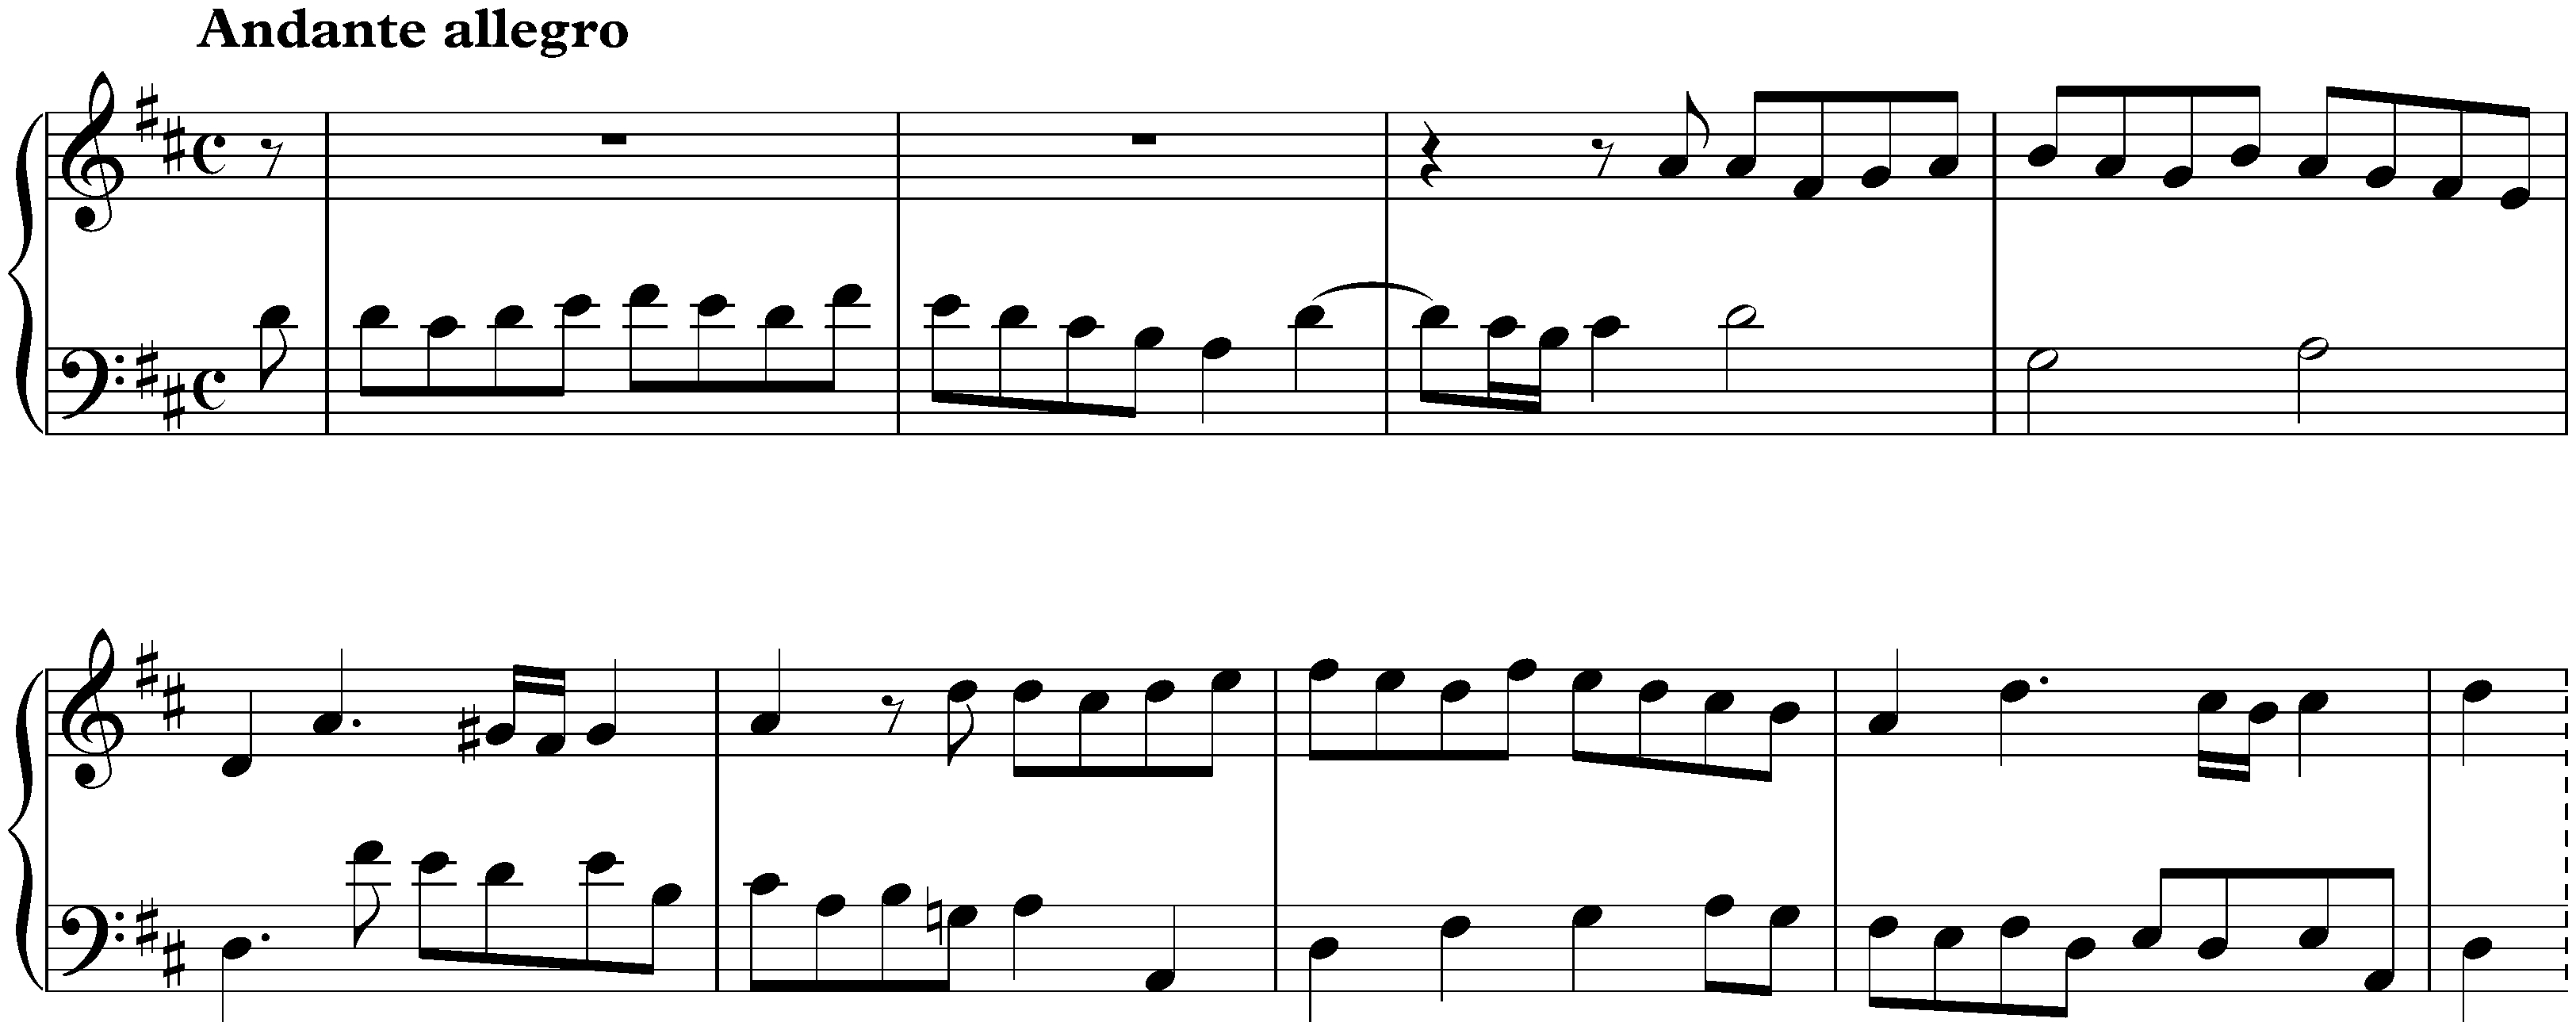 Sonata in D major, K. 287